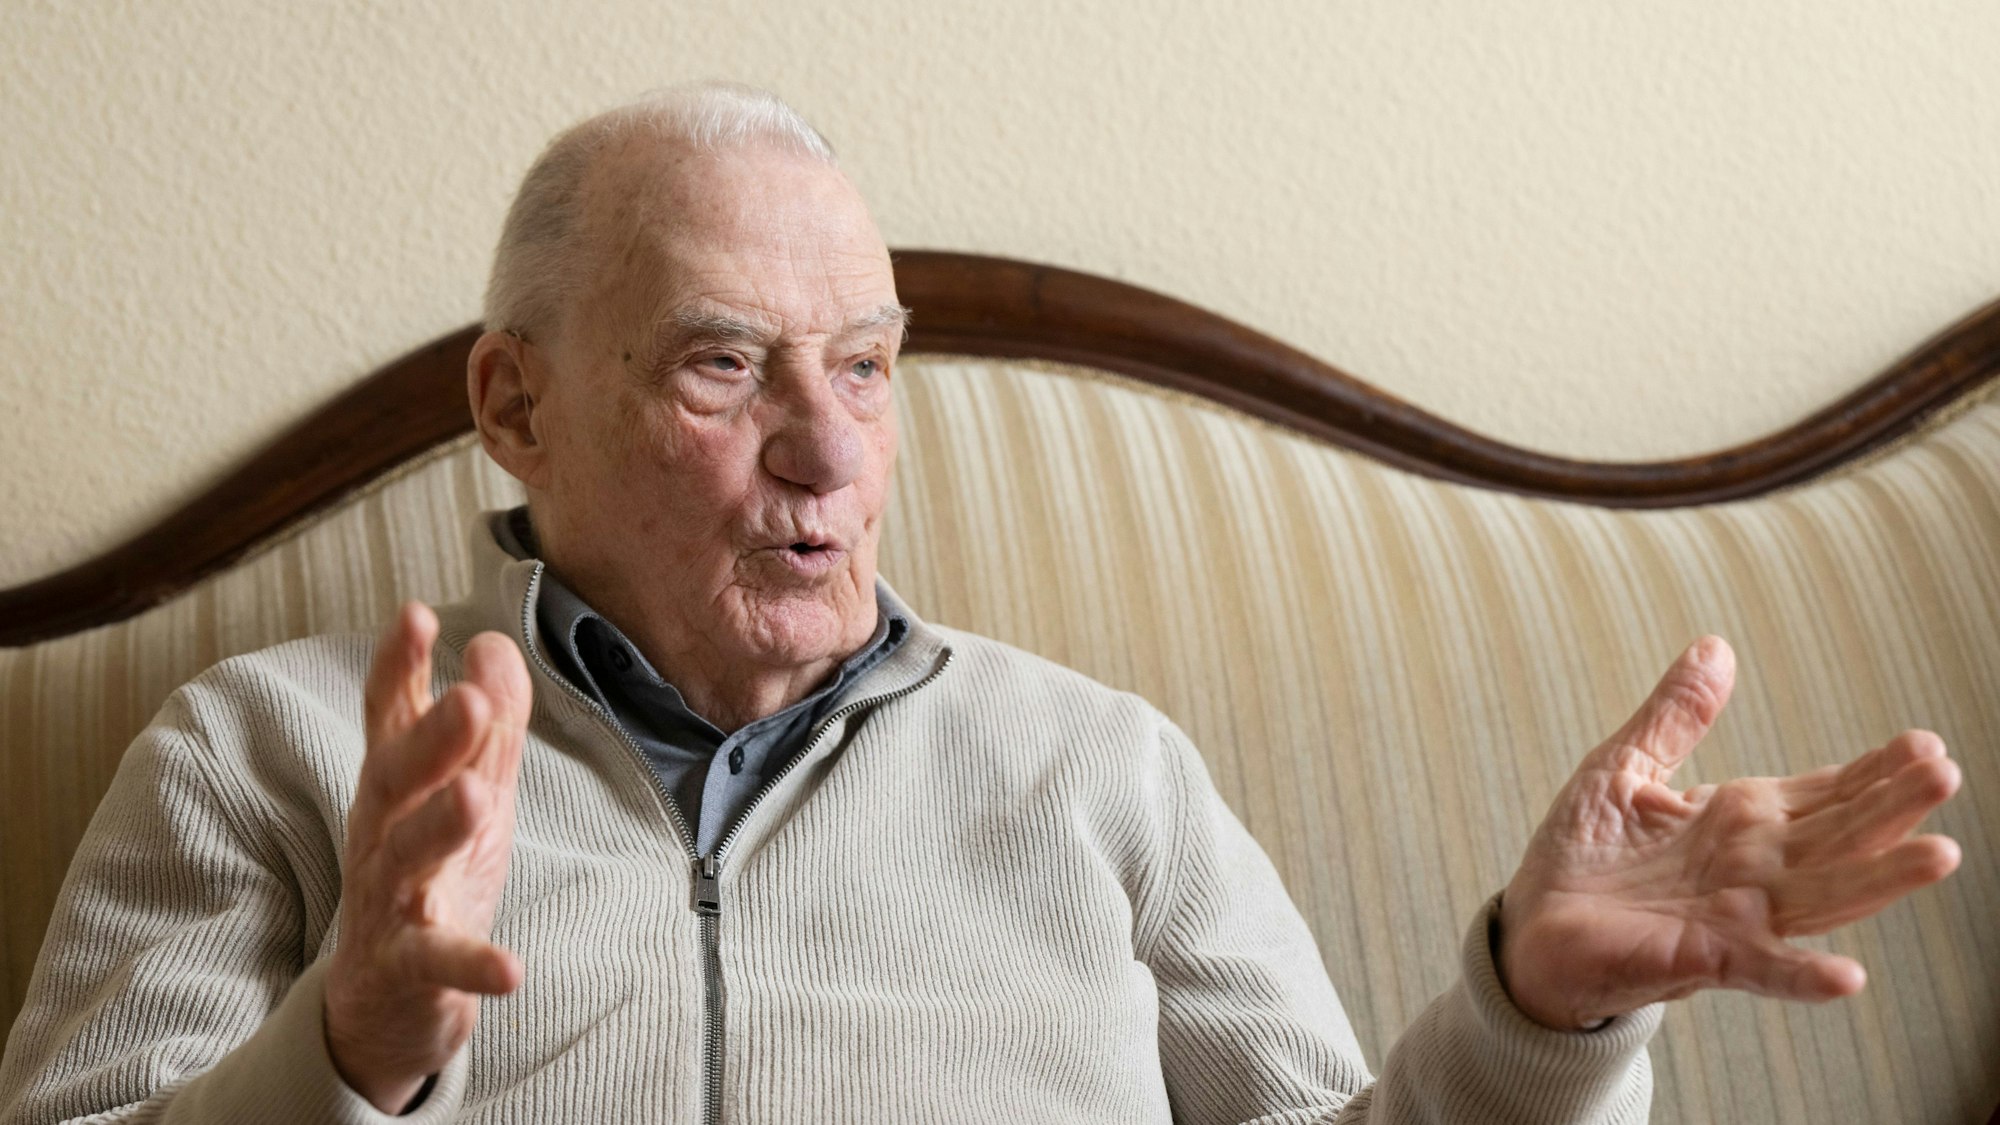 Der pensionierte ehemalige Staatsanwalt Gerhard Wiese, fotografiert während eines Interviews mit der dpa in seinem Privathaus in Frankfurt. Der 94-jährige war Mitkläger bei den Frankfurter Auschwitz-Prozessen und erzählt heute an Schulen von seinen Erfahrungen.